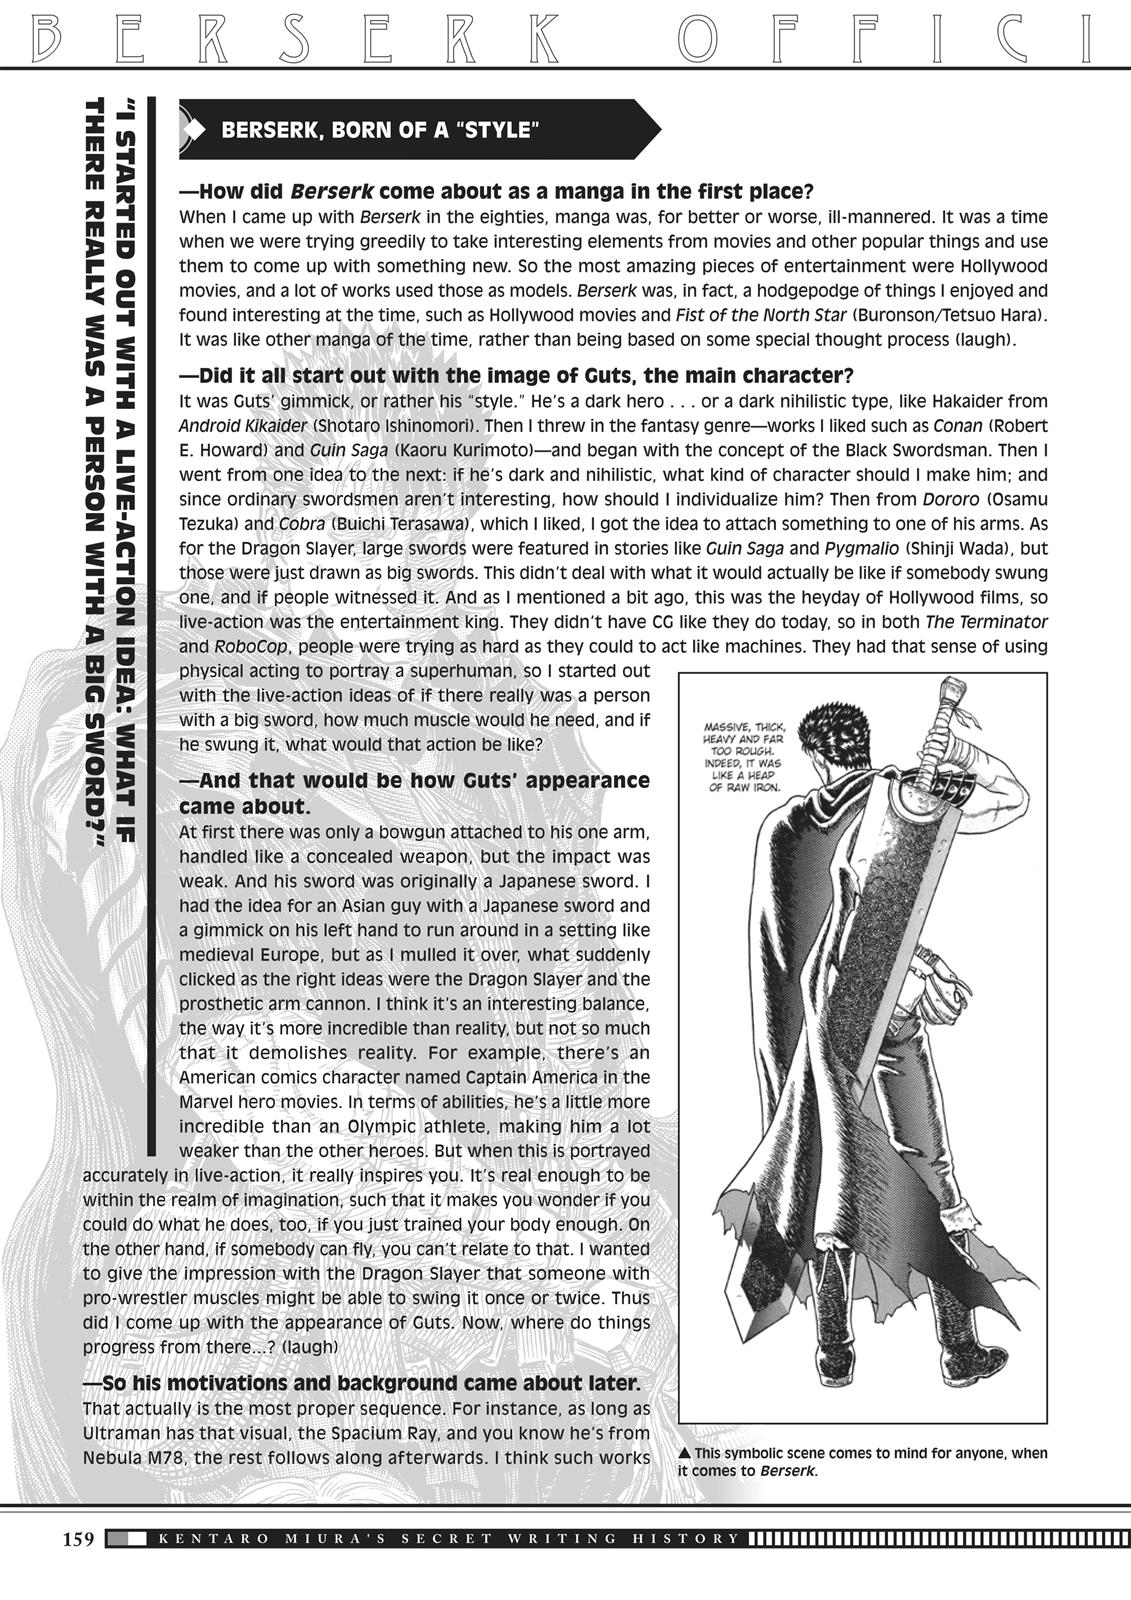 Berserk Manga Chapter 350.5 image 156